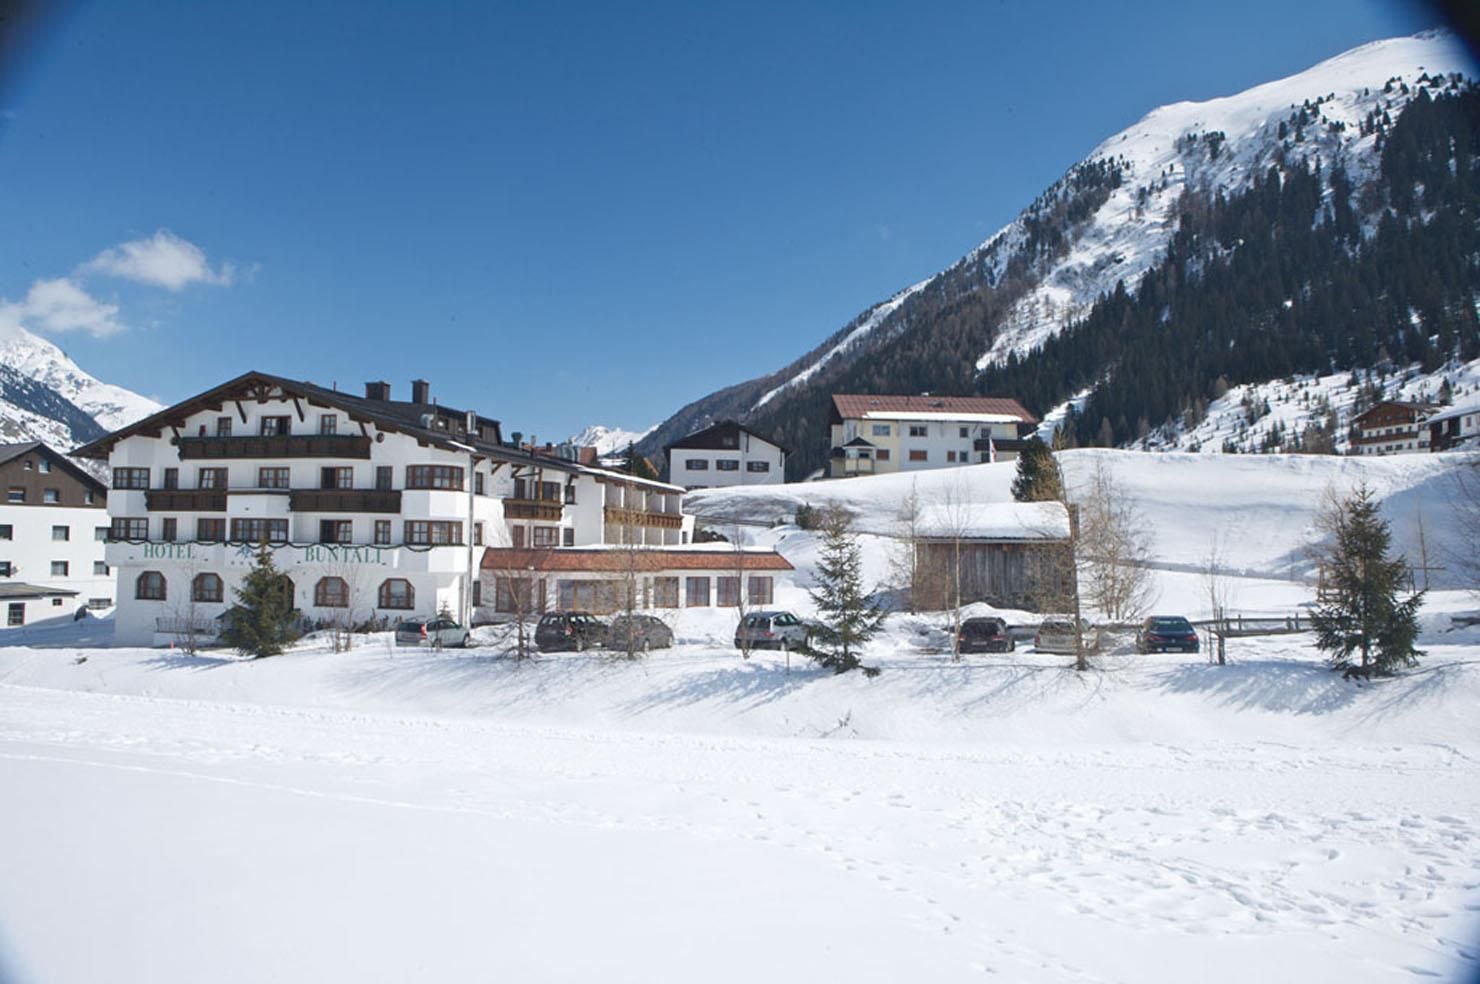 Meer info over Hotel Büntali  bij Wintertrex